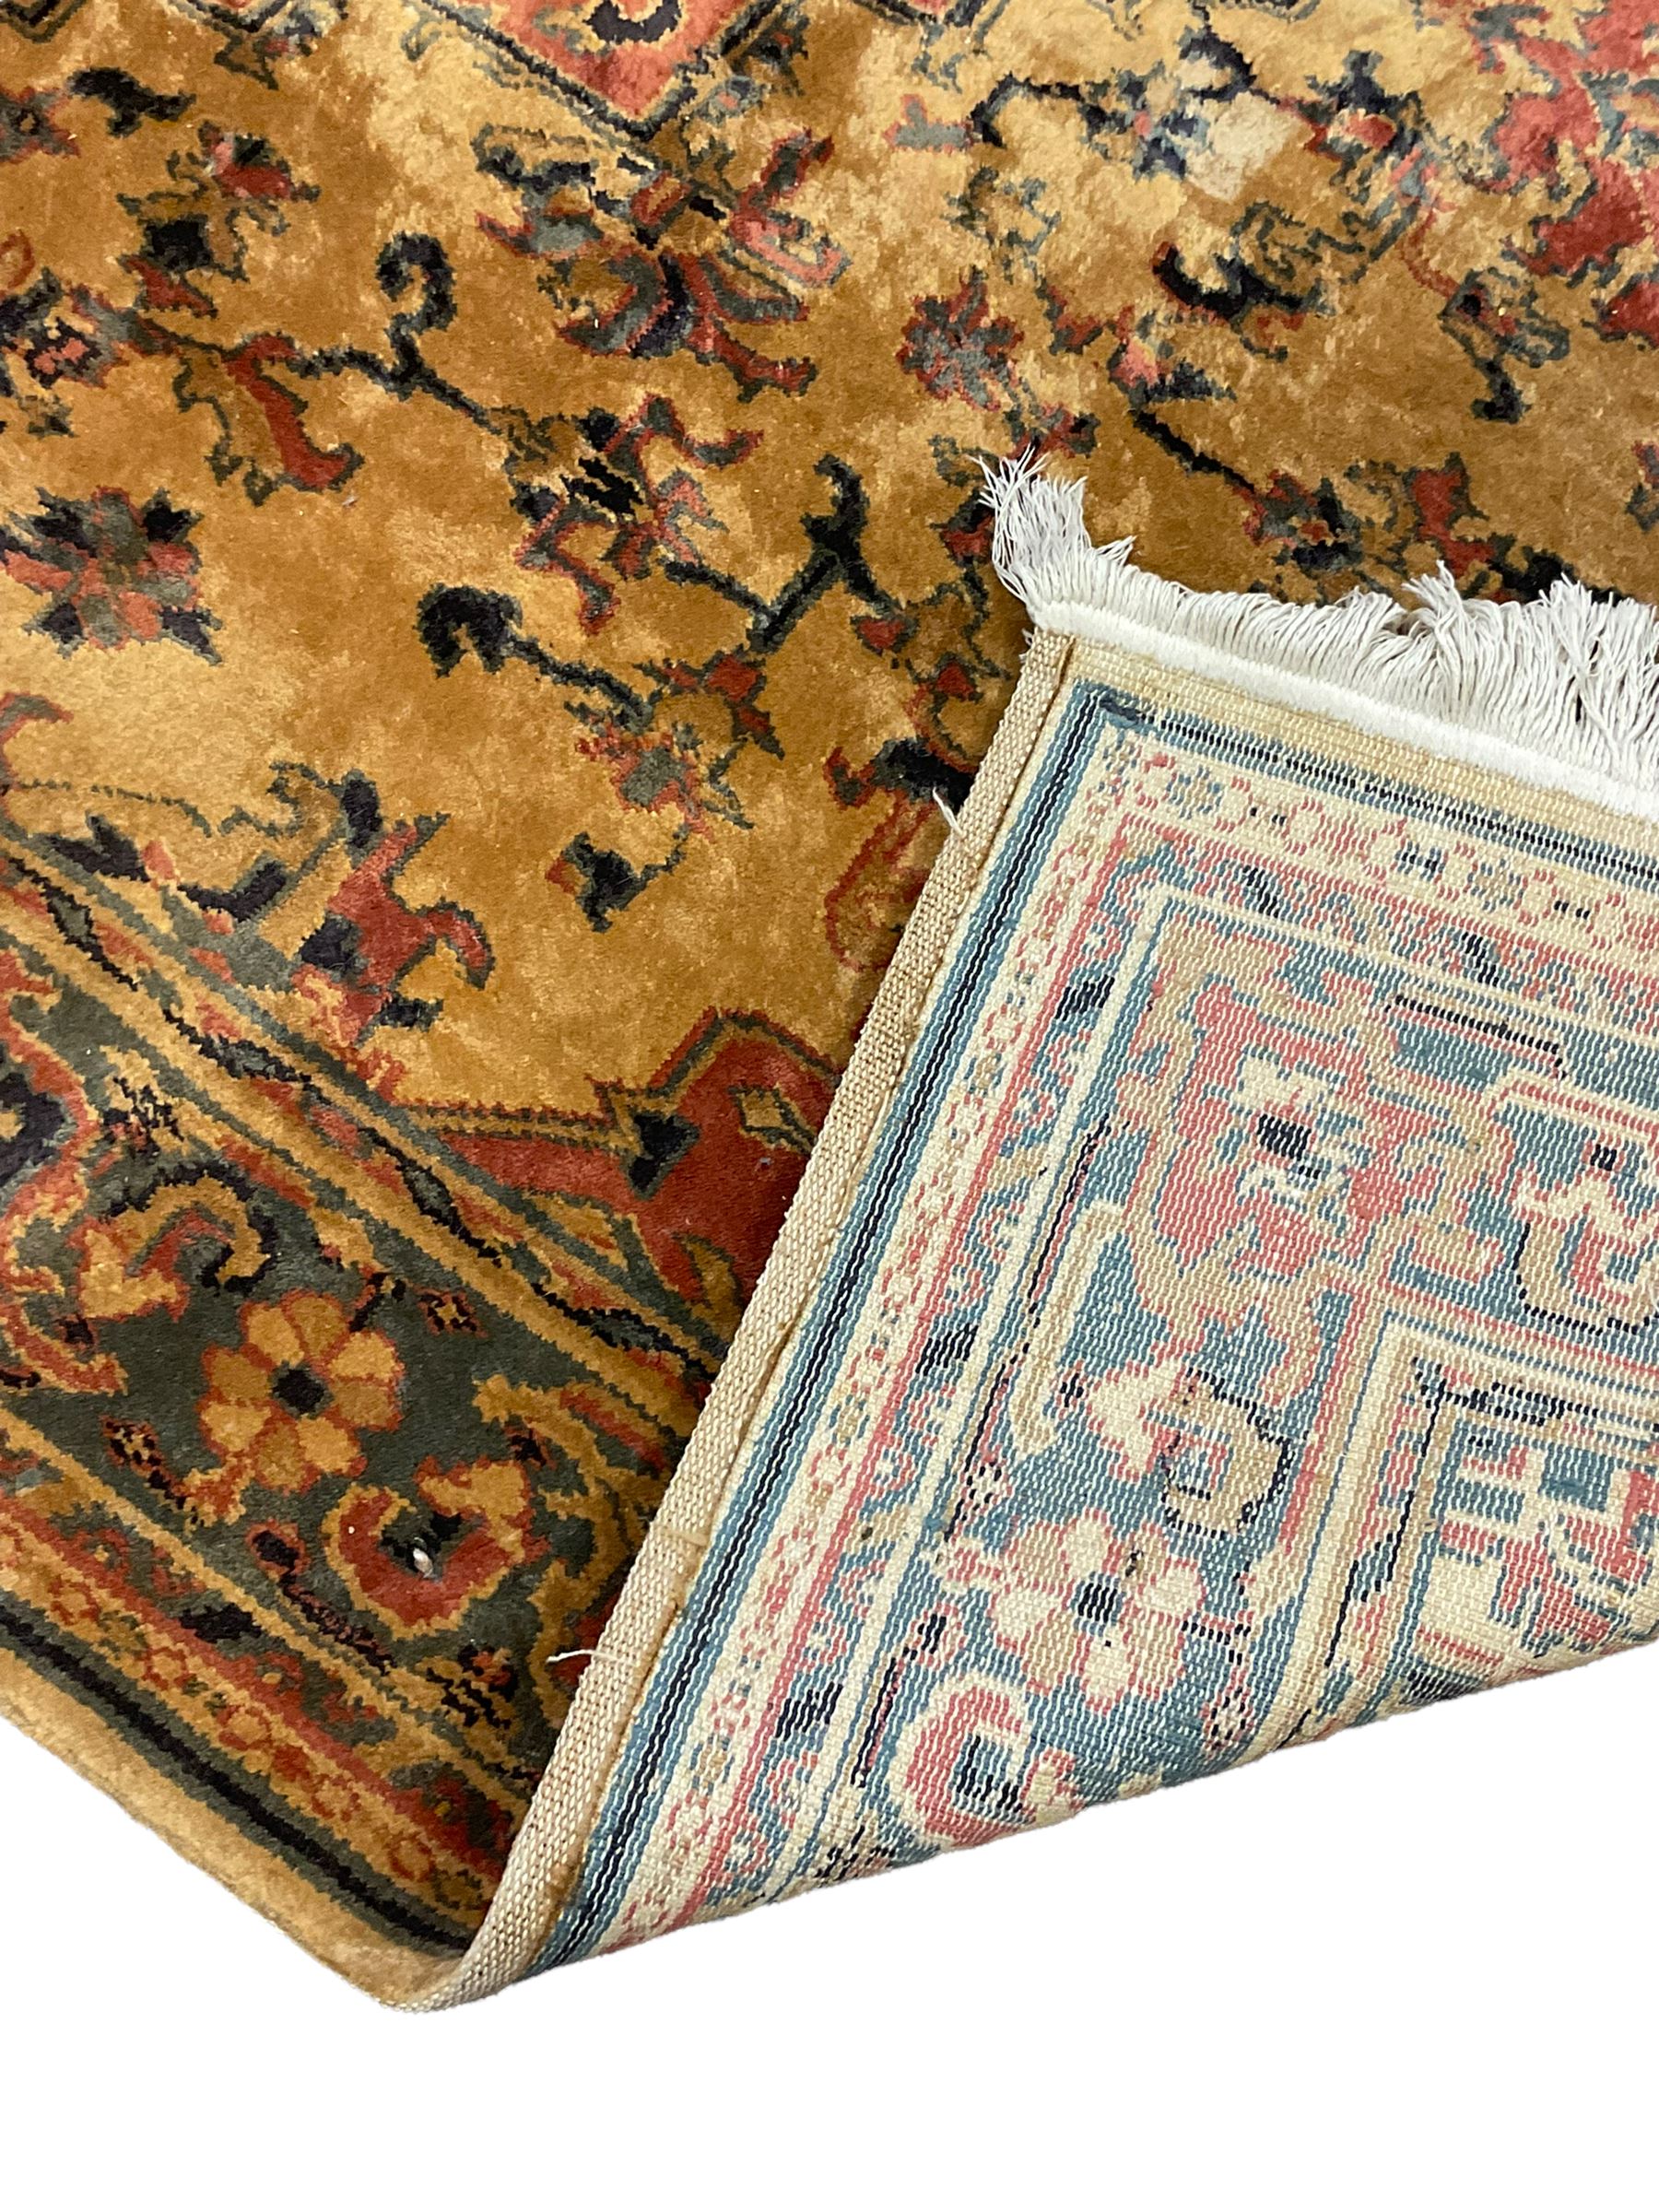 Persian design rug - Image 4 of 5